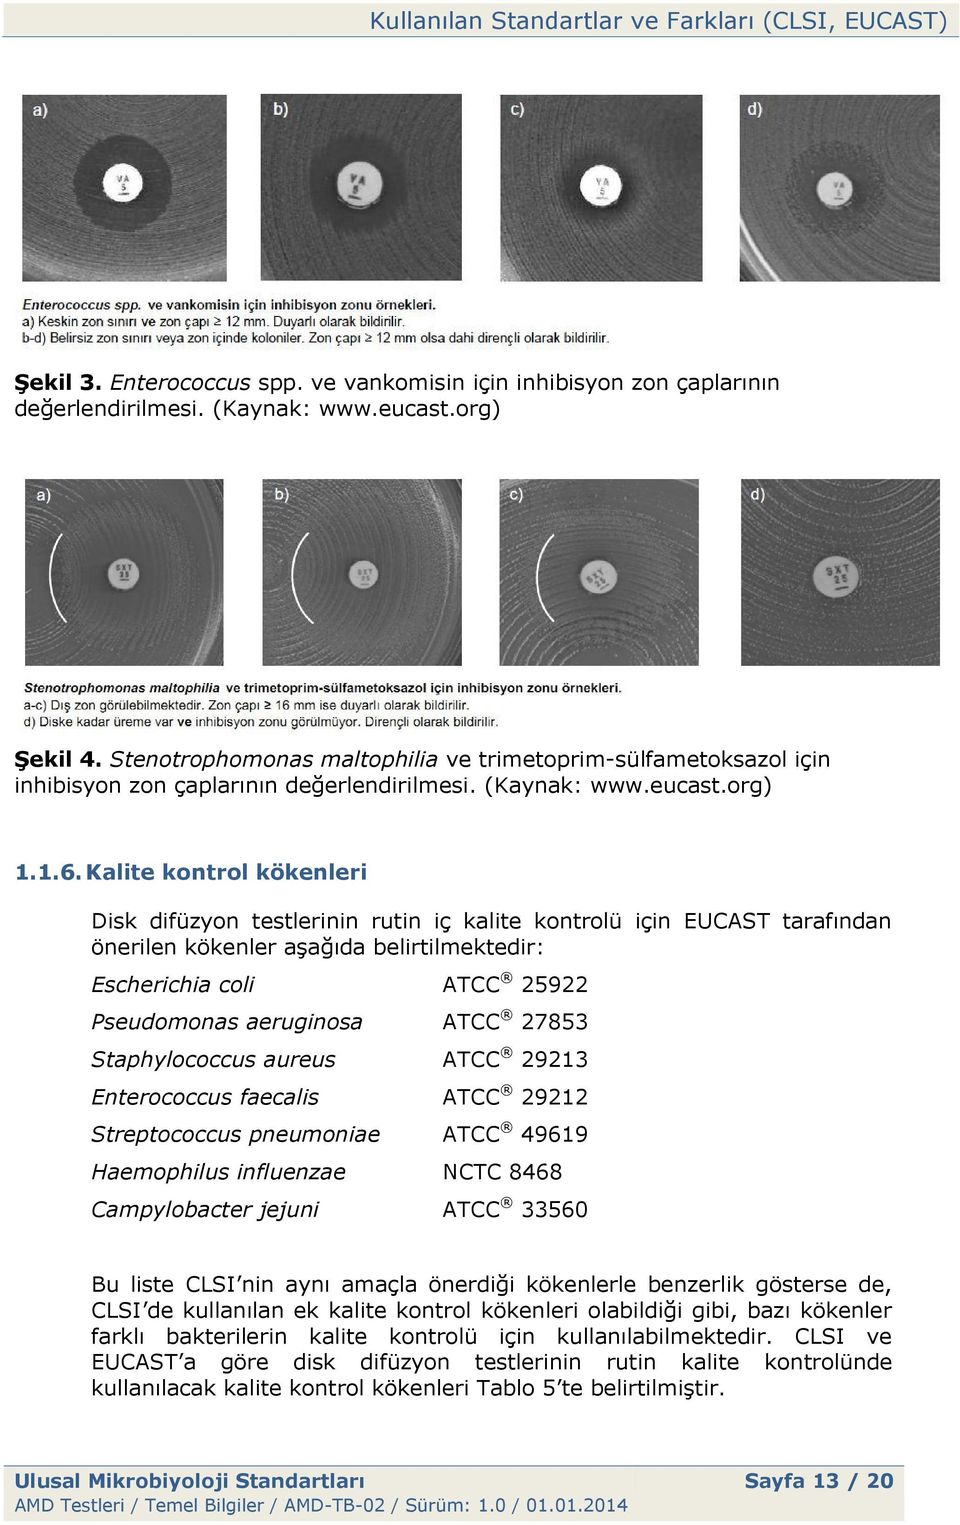 Kalite kontrol kökenleri Disk difüzyon testlerinin rutin iç kalite kontrolü için EUCAST tarafından önerilen kökenler aşağıda belirtilmektedir: Escherichia coli ATCC 25922 Pseudomonas aeruginosa ATCC